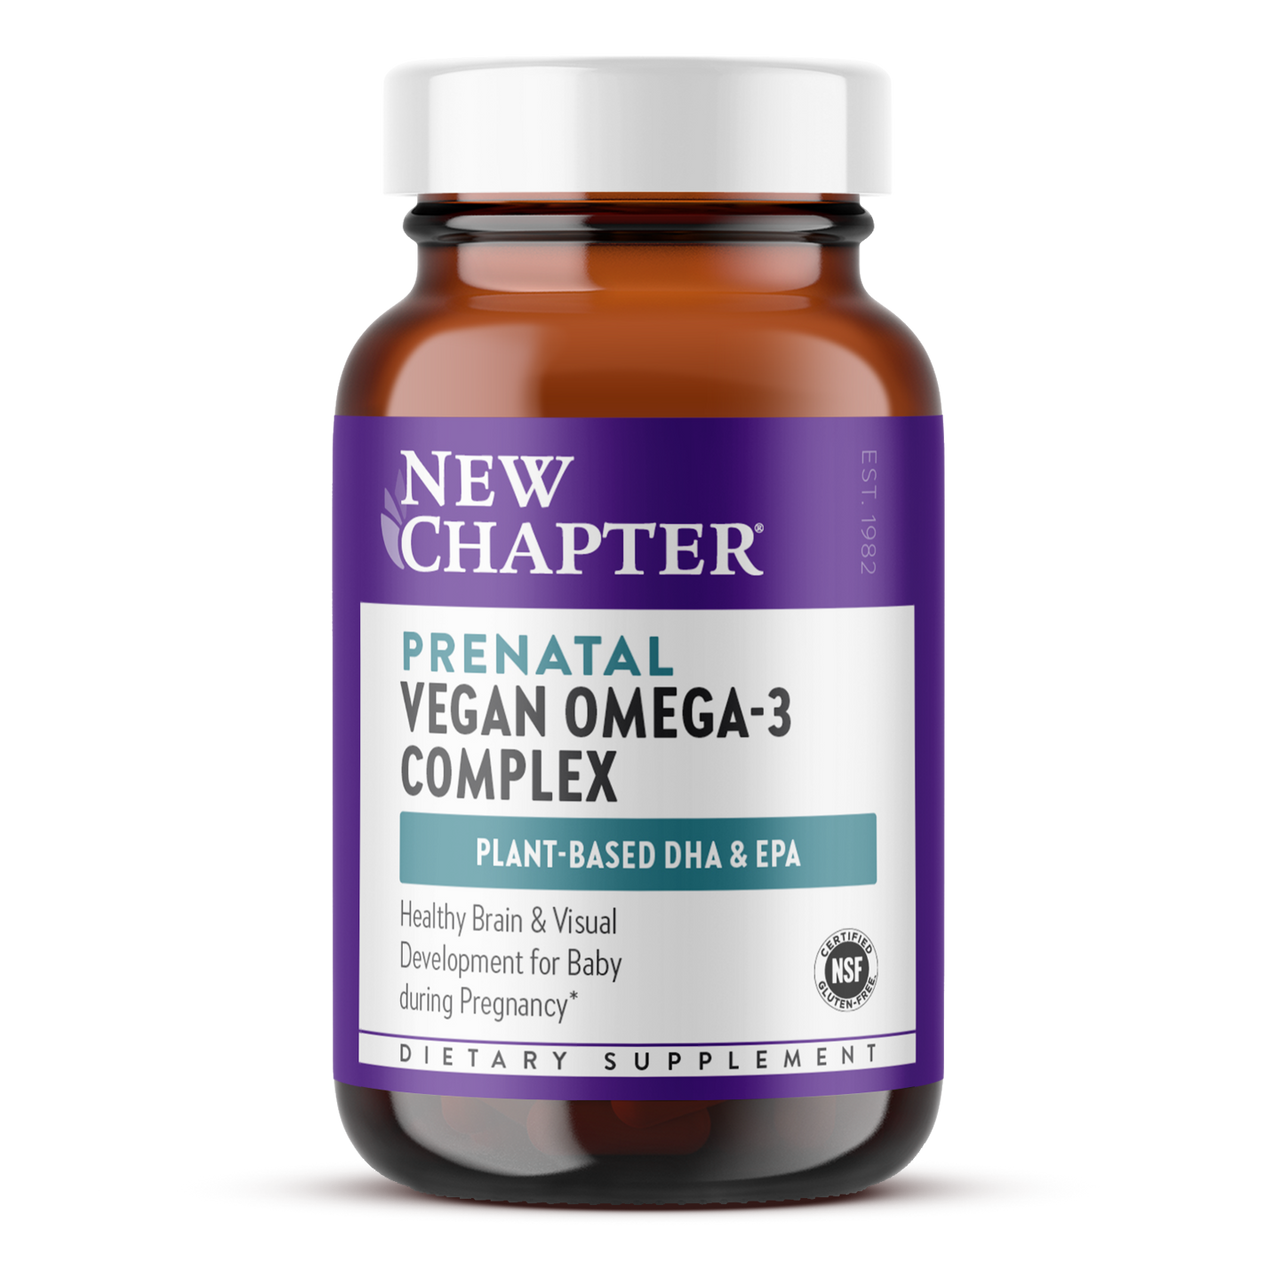 Prenatal Vegan Omega-3 Complex